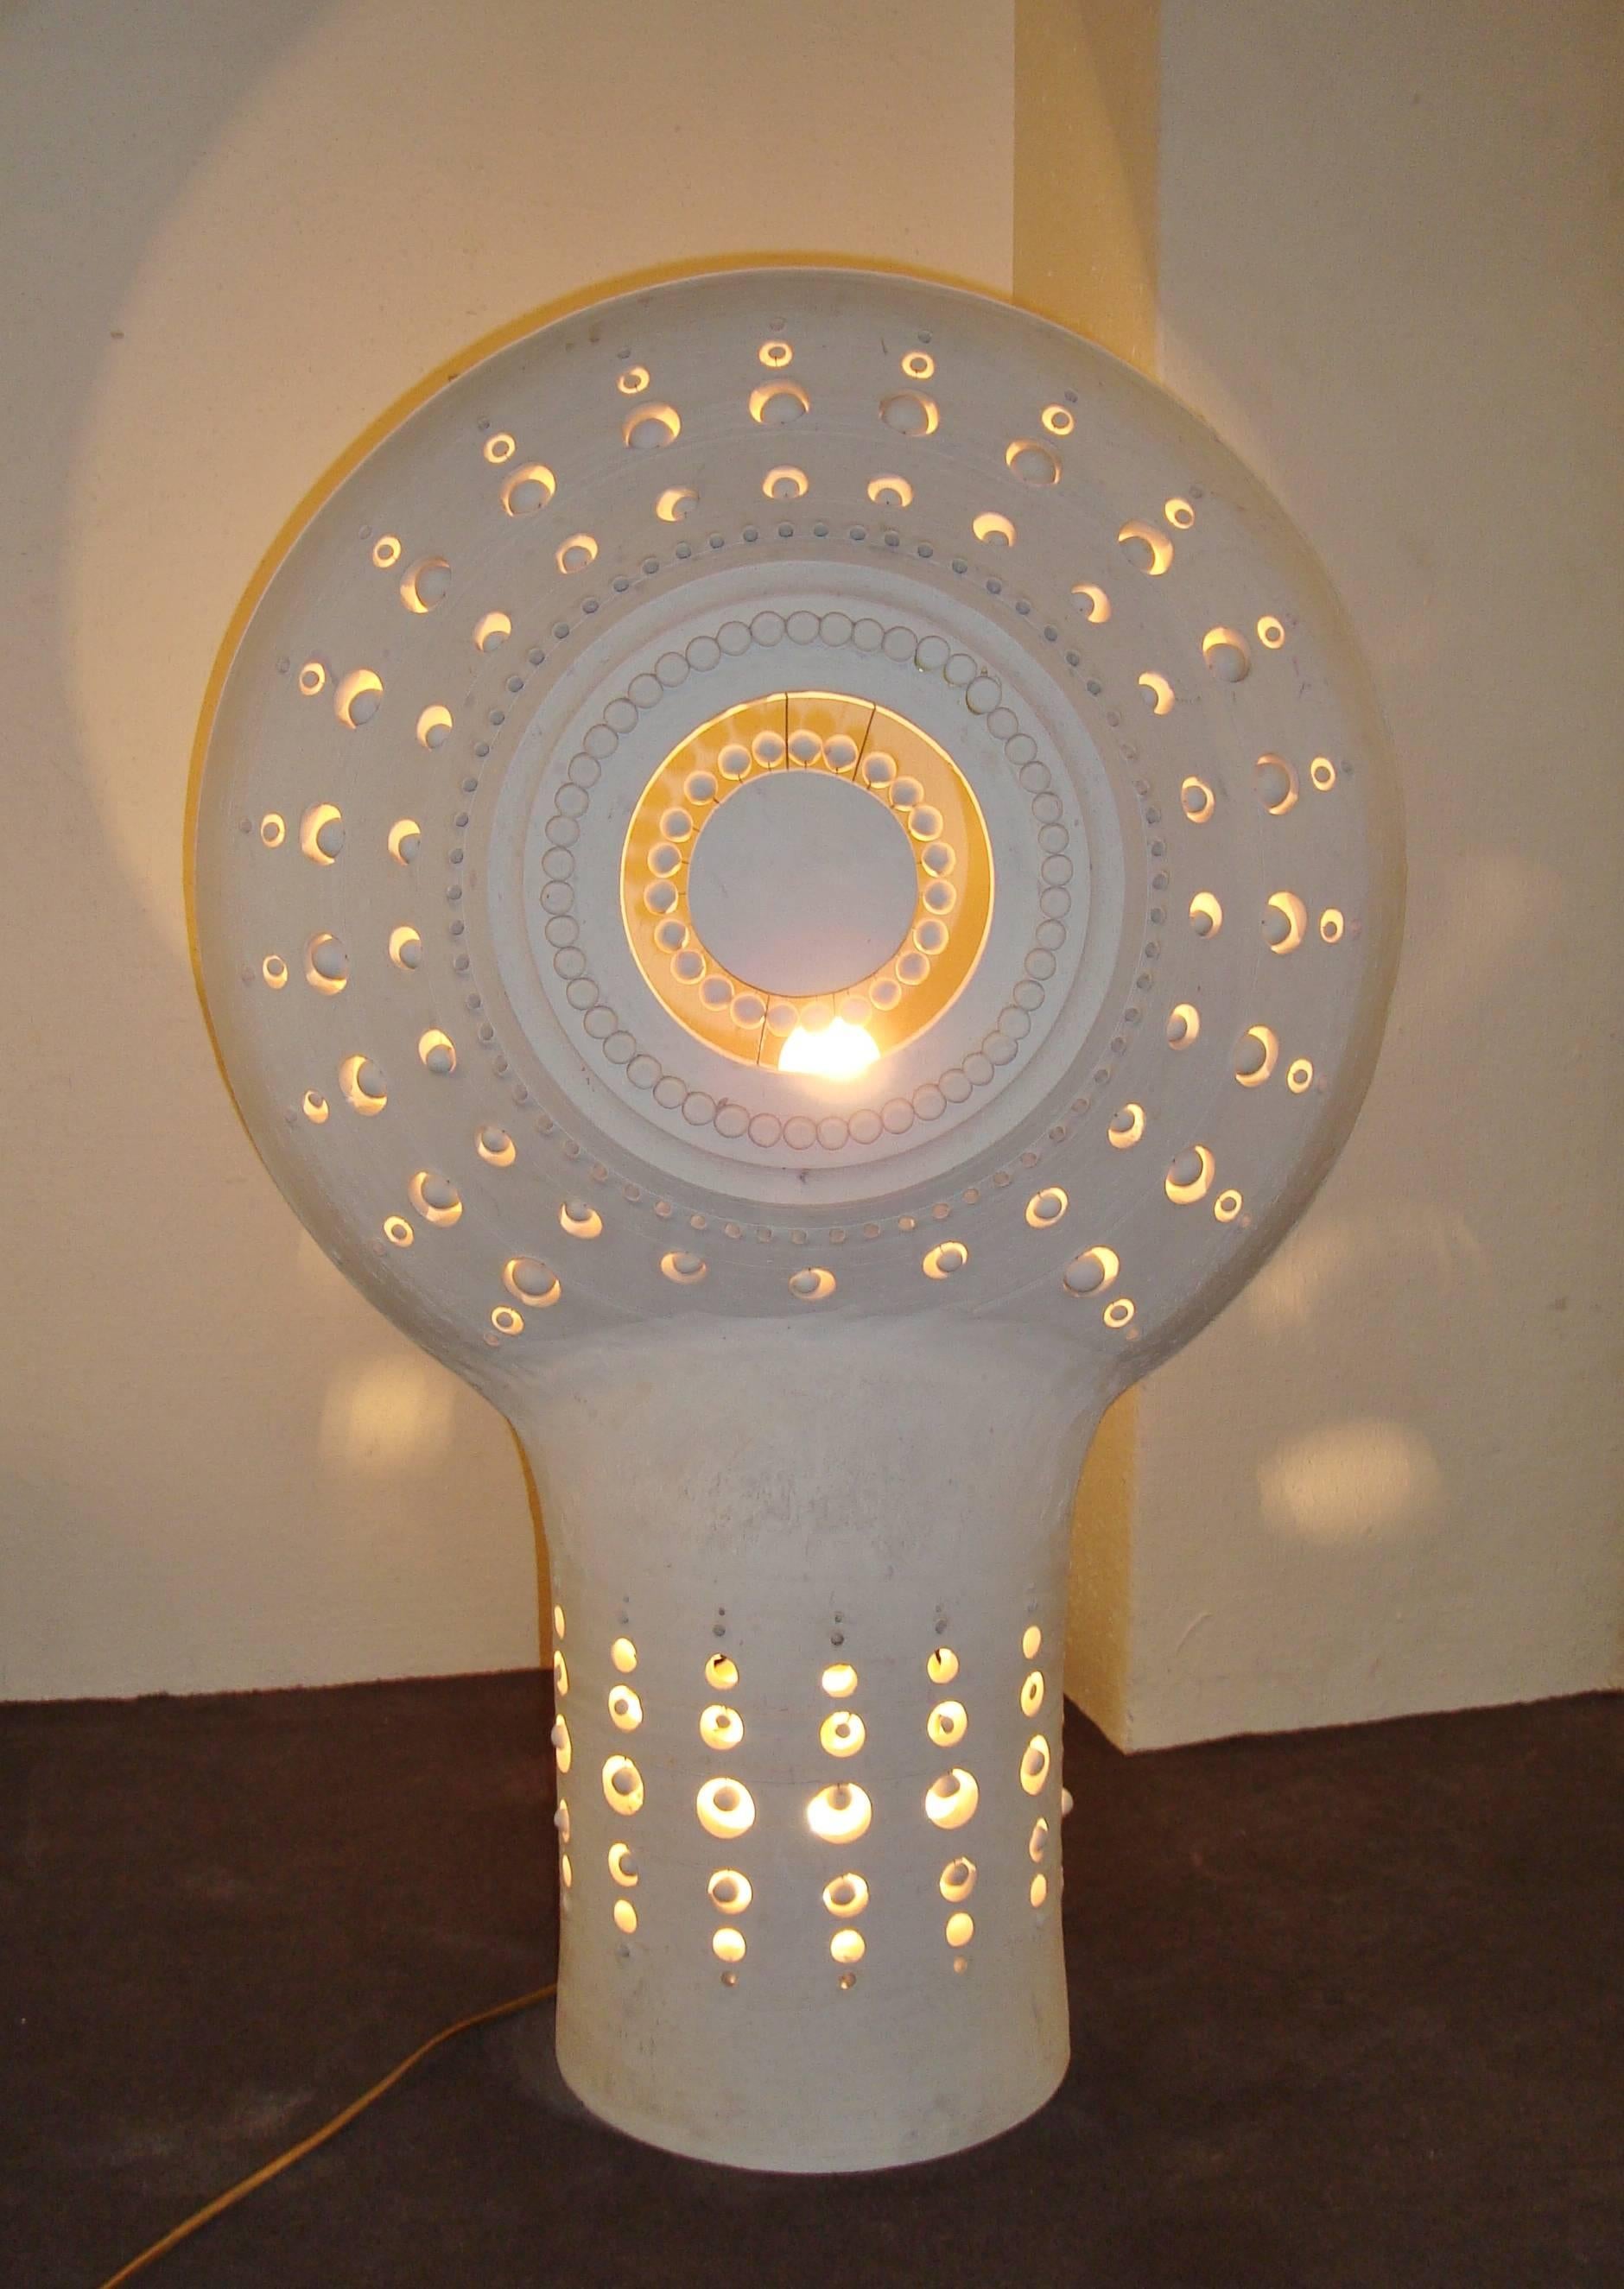 Spectacular unglazed ceramic table lamp, circa 1970, by Georges Pelletier (Bruxelles then France 1938-)
Signed. 

Georges Pelletier suivit les cours de l’Académie Charpentier et de l’Artisanat scolaire à Paris.
Puis travailla à l’Atelier de